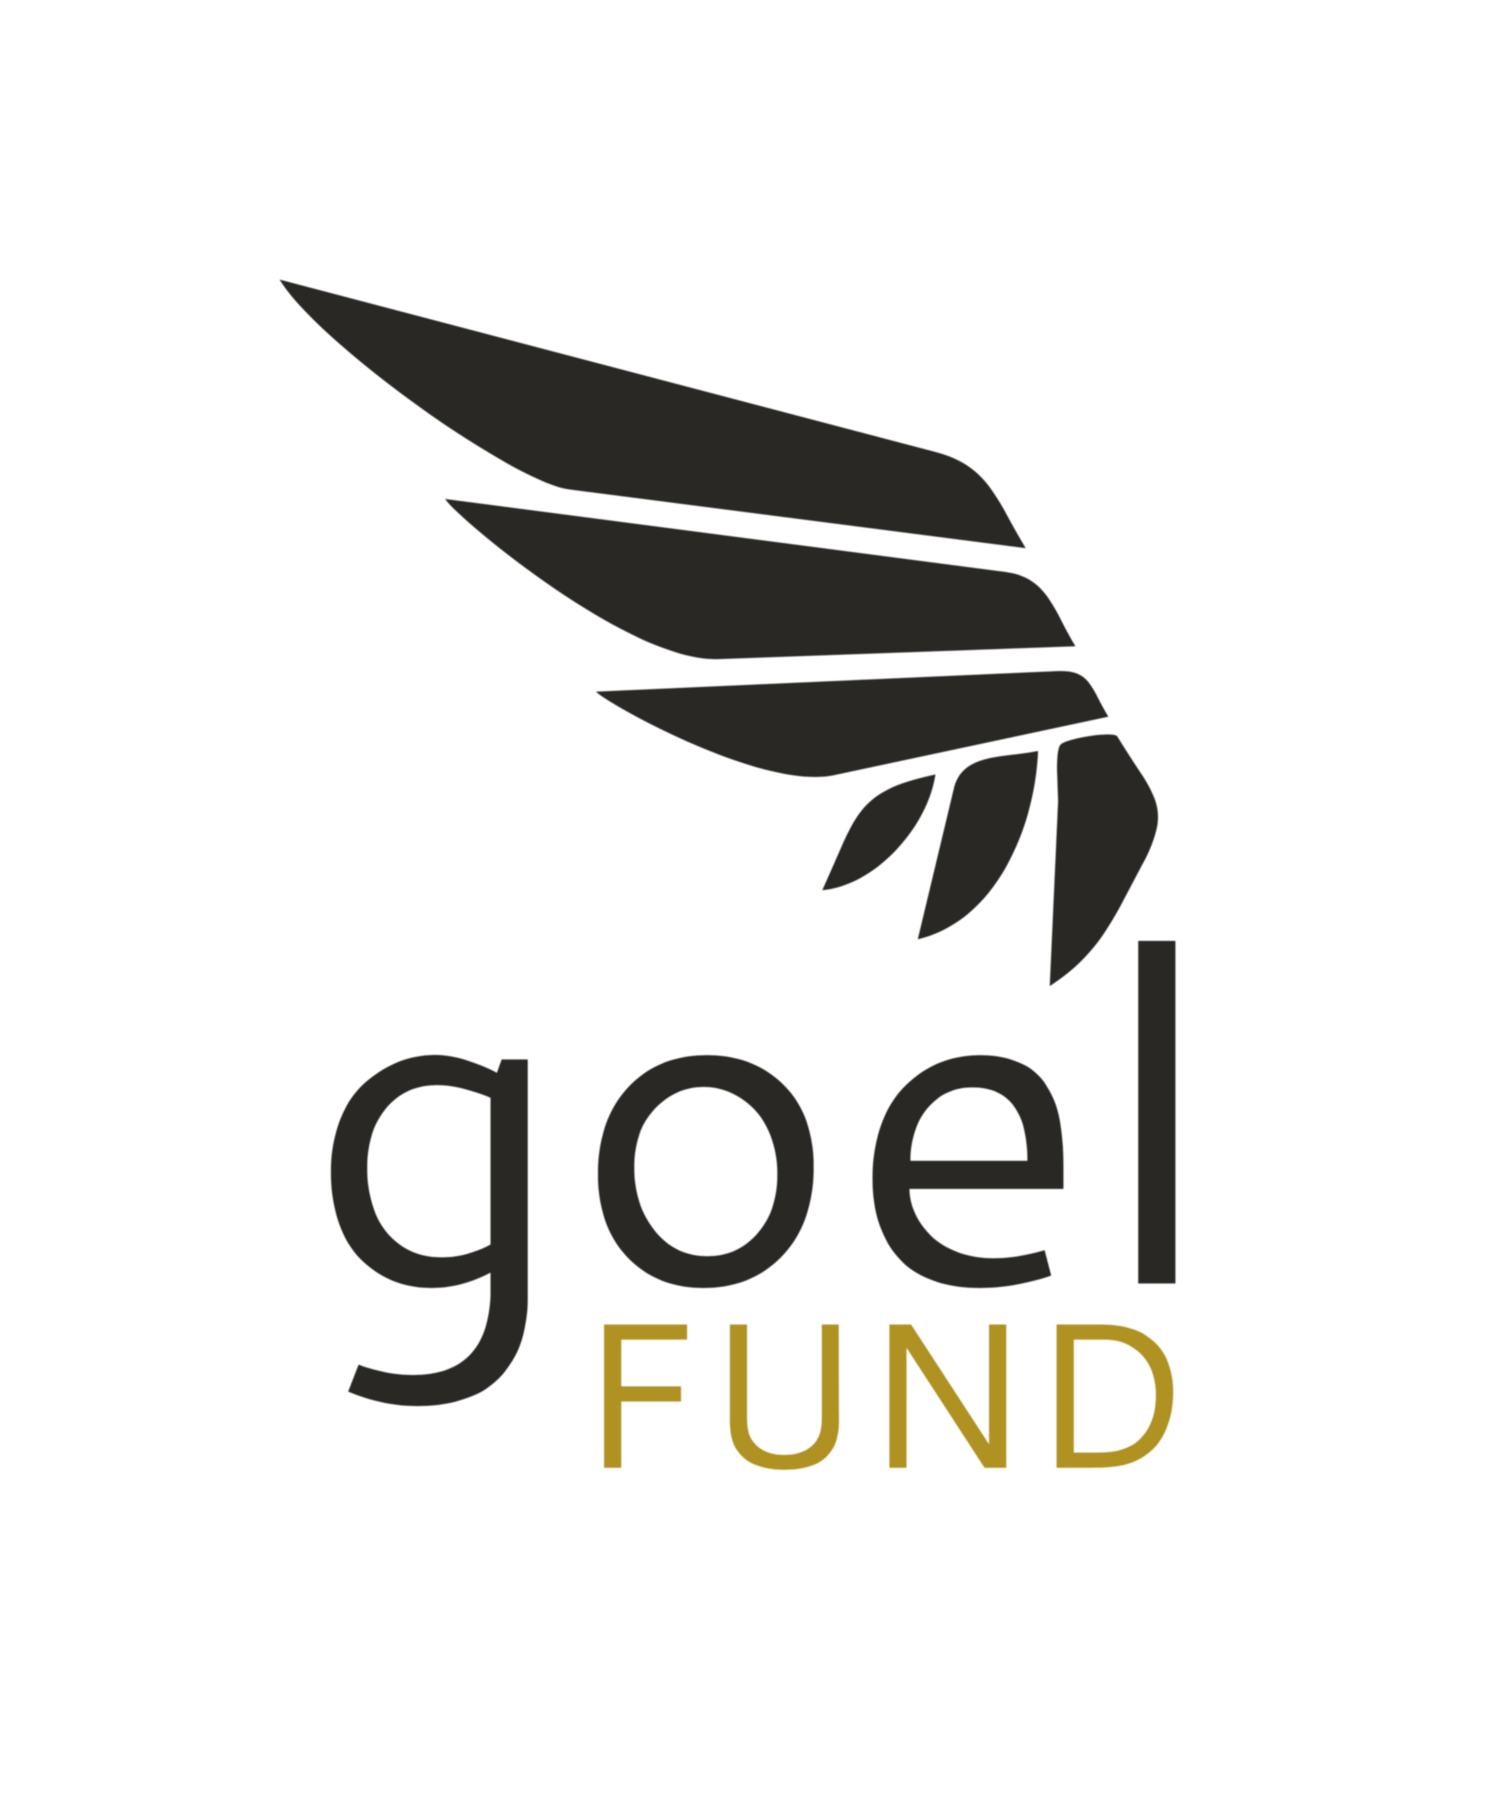 Goel Fund